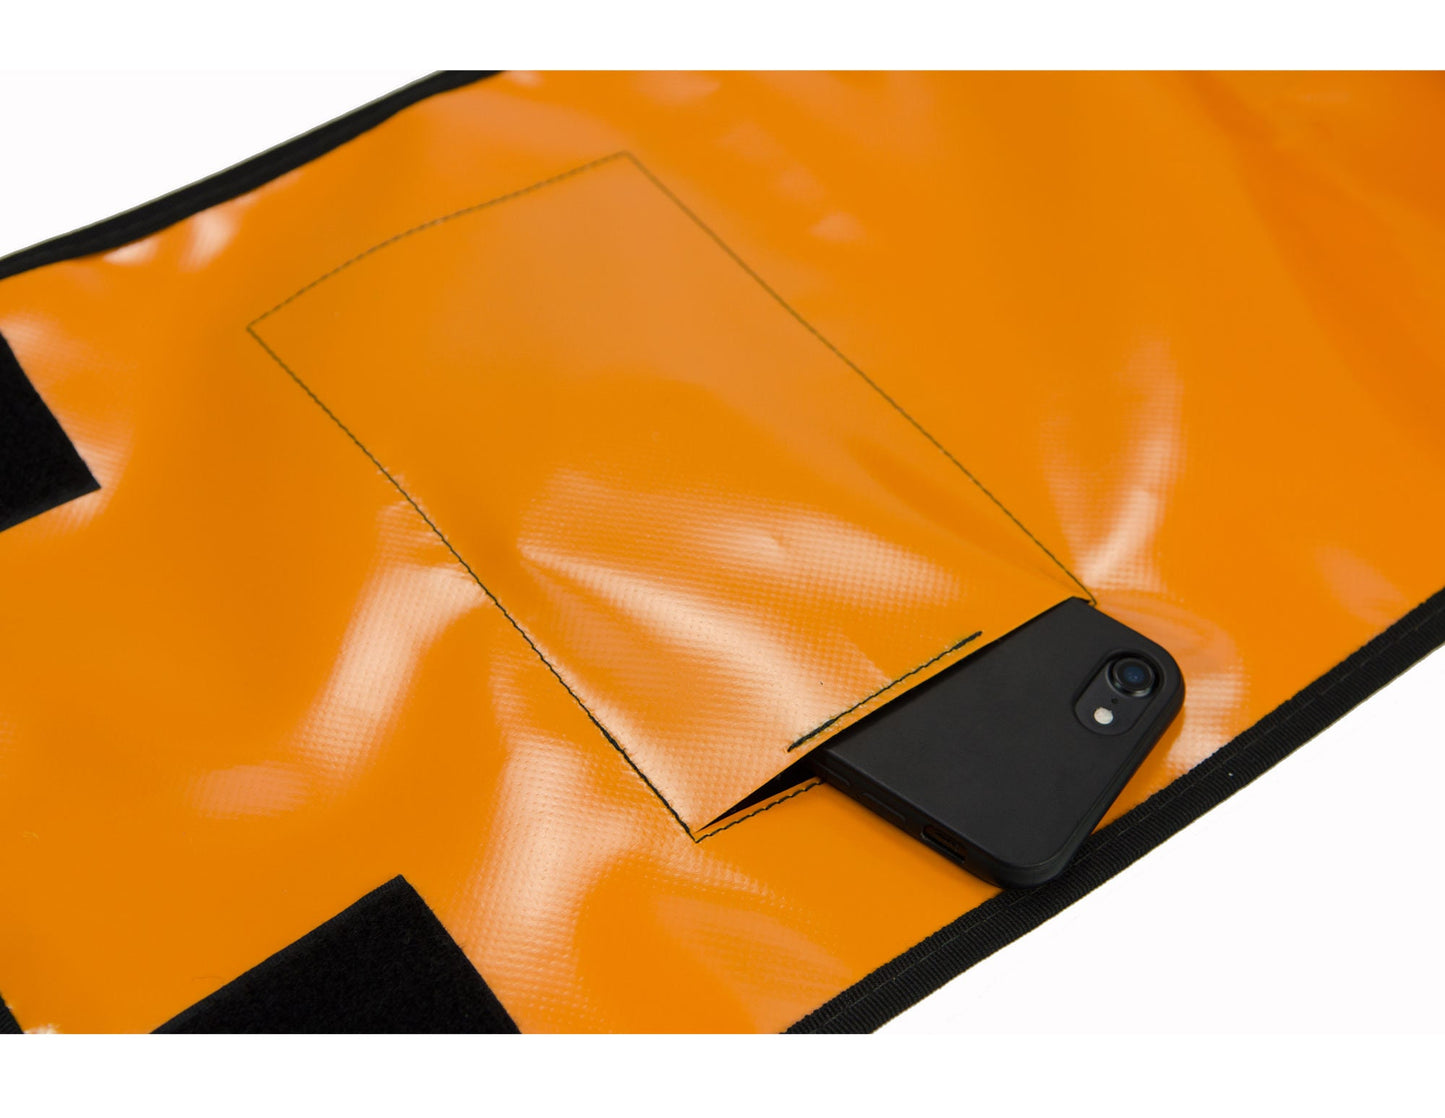 HOLE-X FOXTROTT Tasche orange Lkw-Plane Bringe Deine Tasche zum Leuchten mit Deinem Smartphone